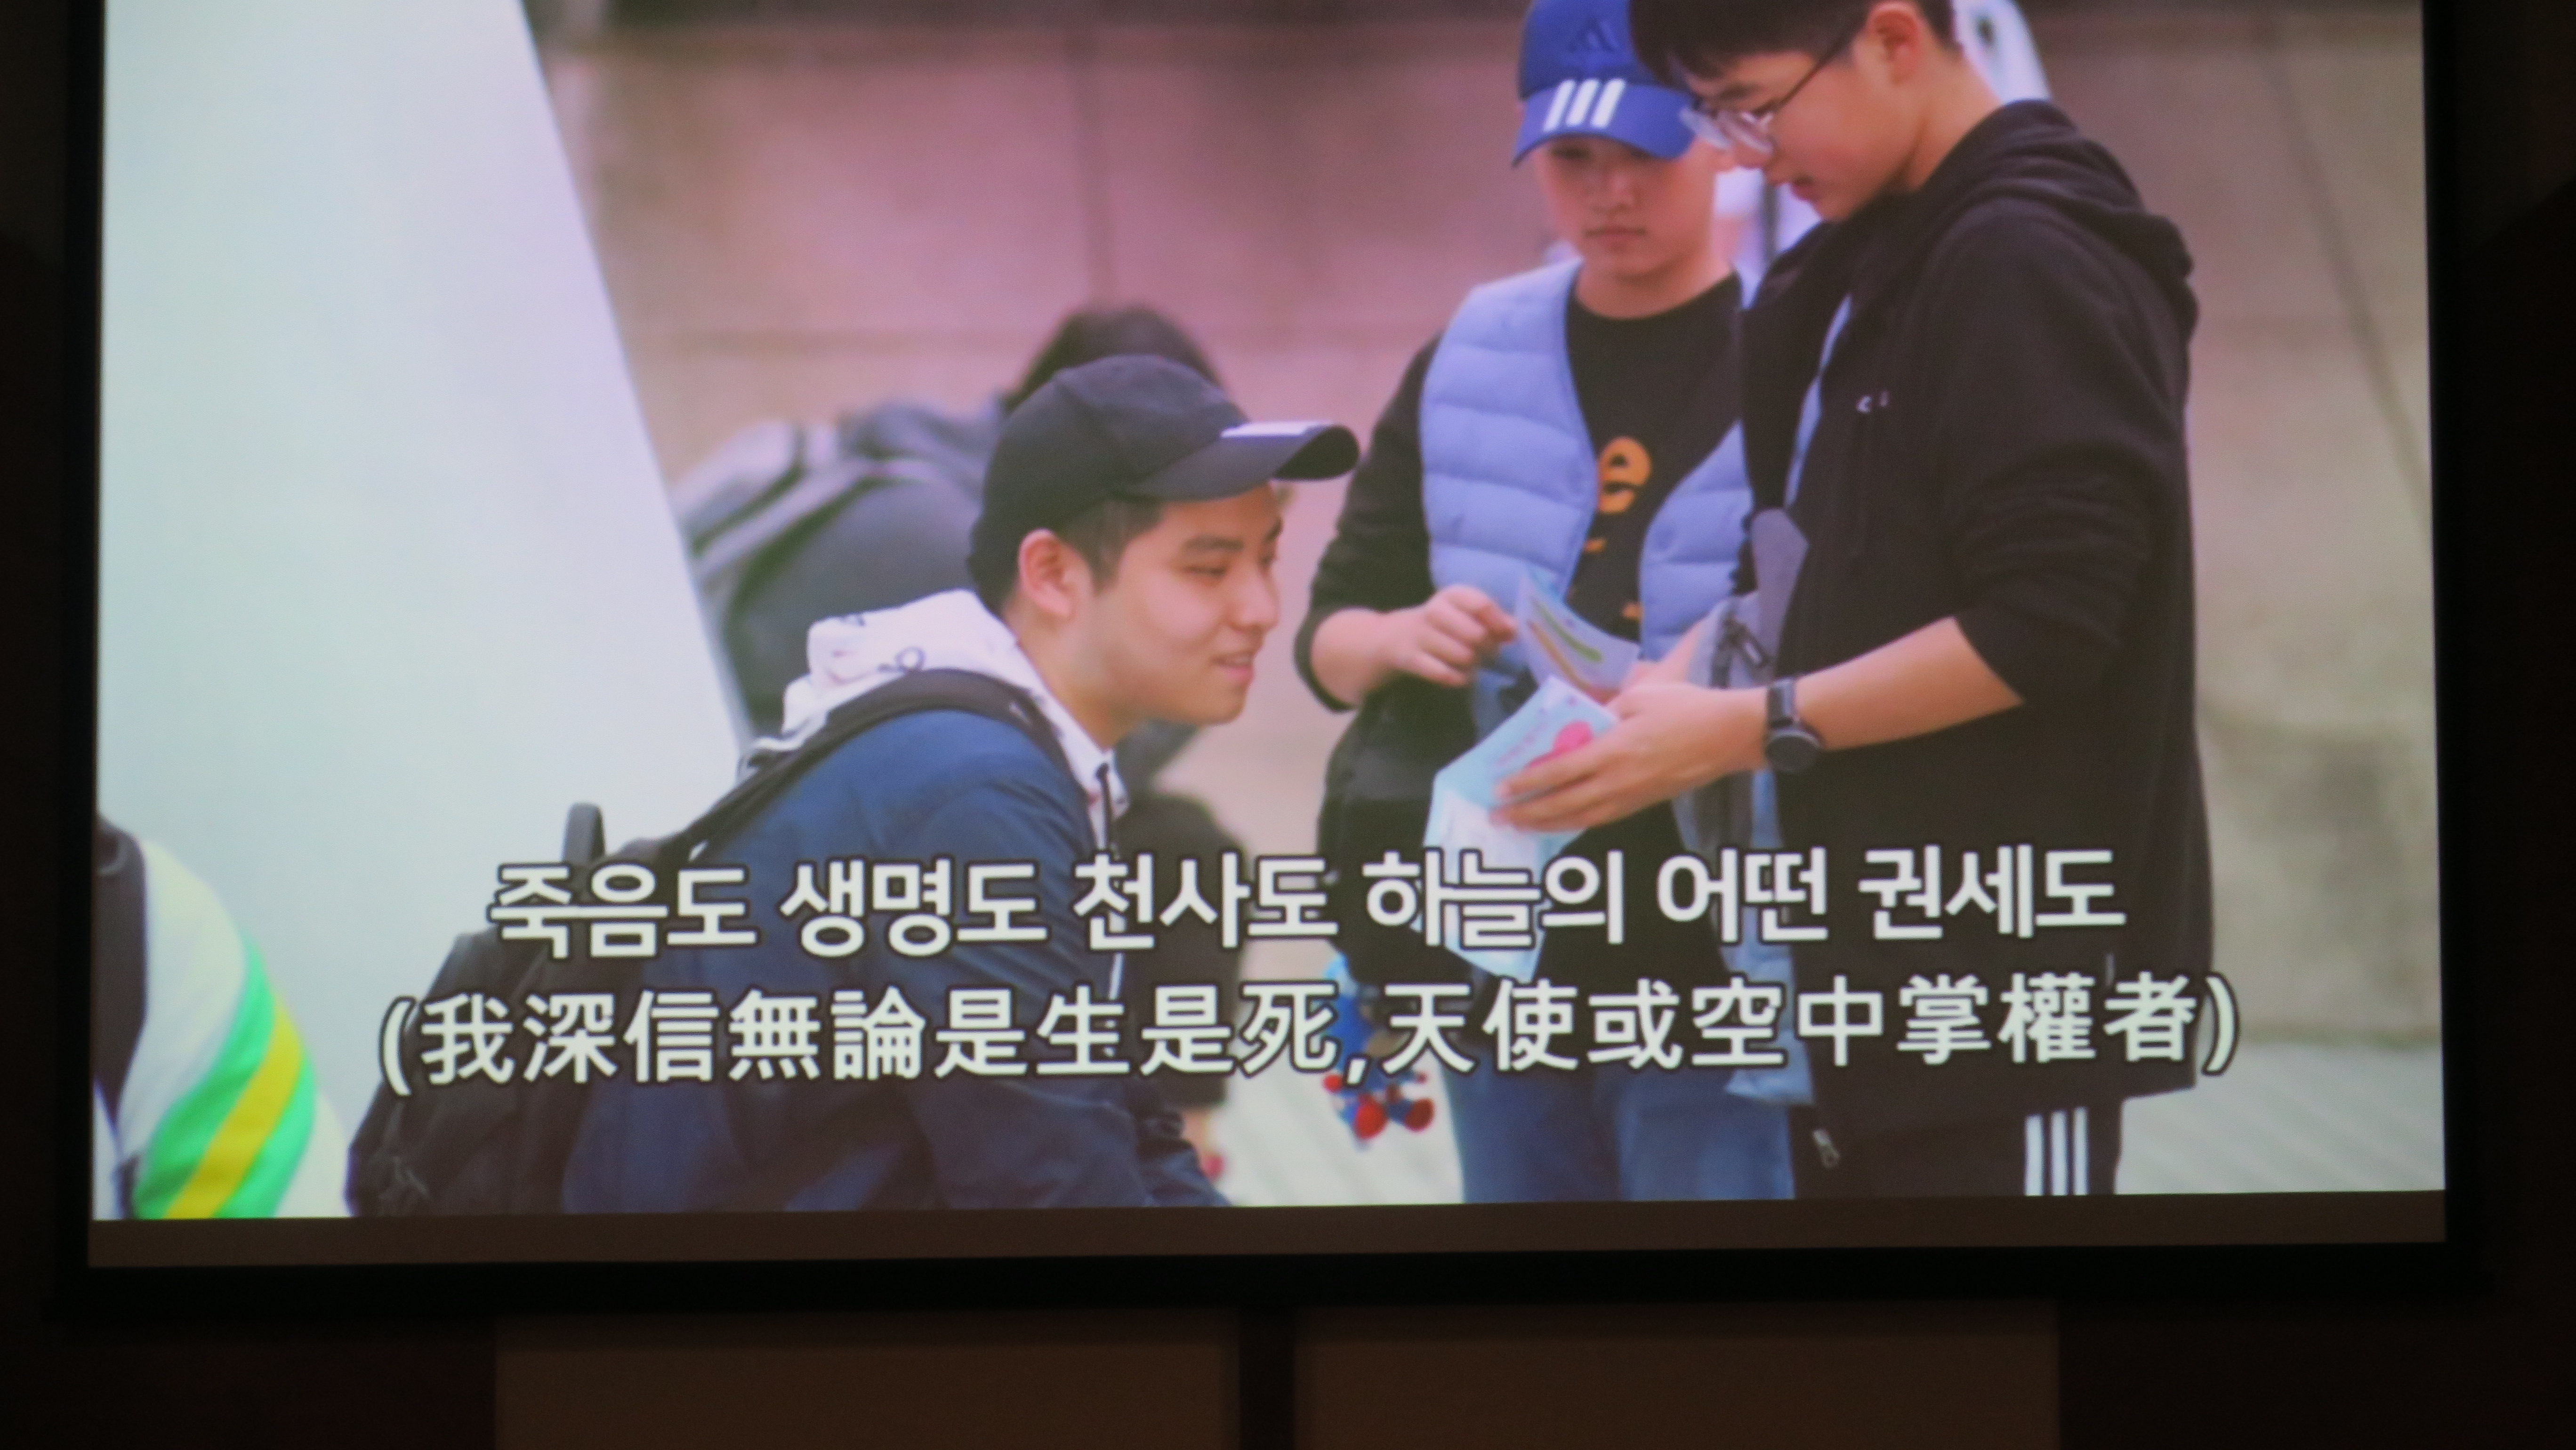 韓小六生在捷運站發單張。(影片截圖)